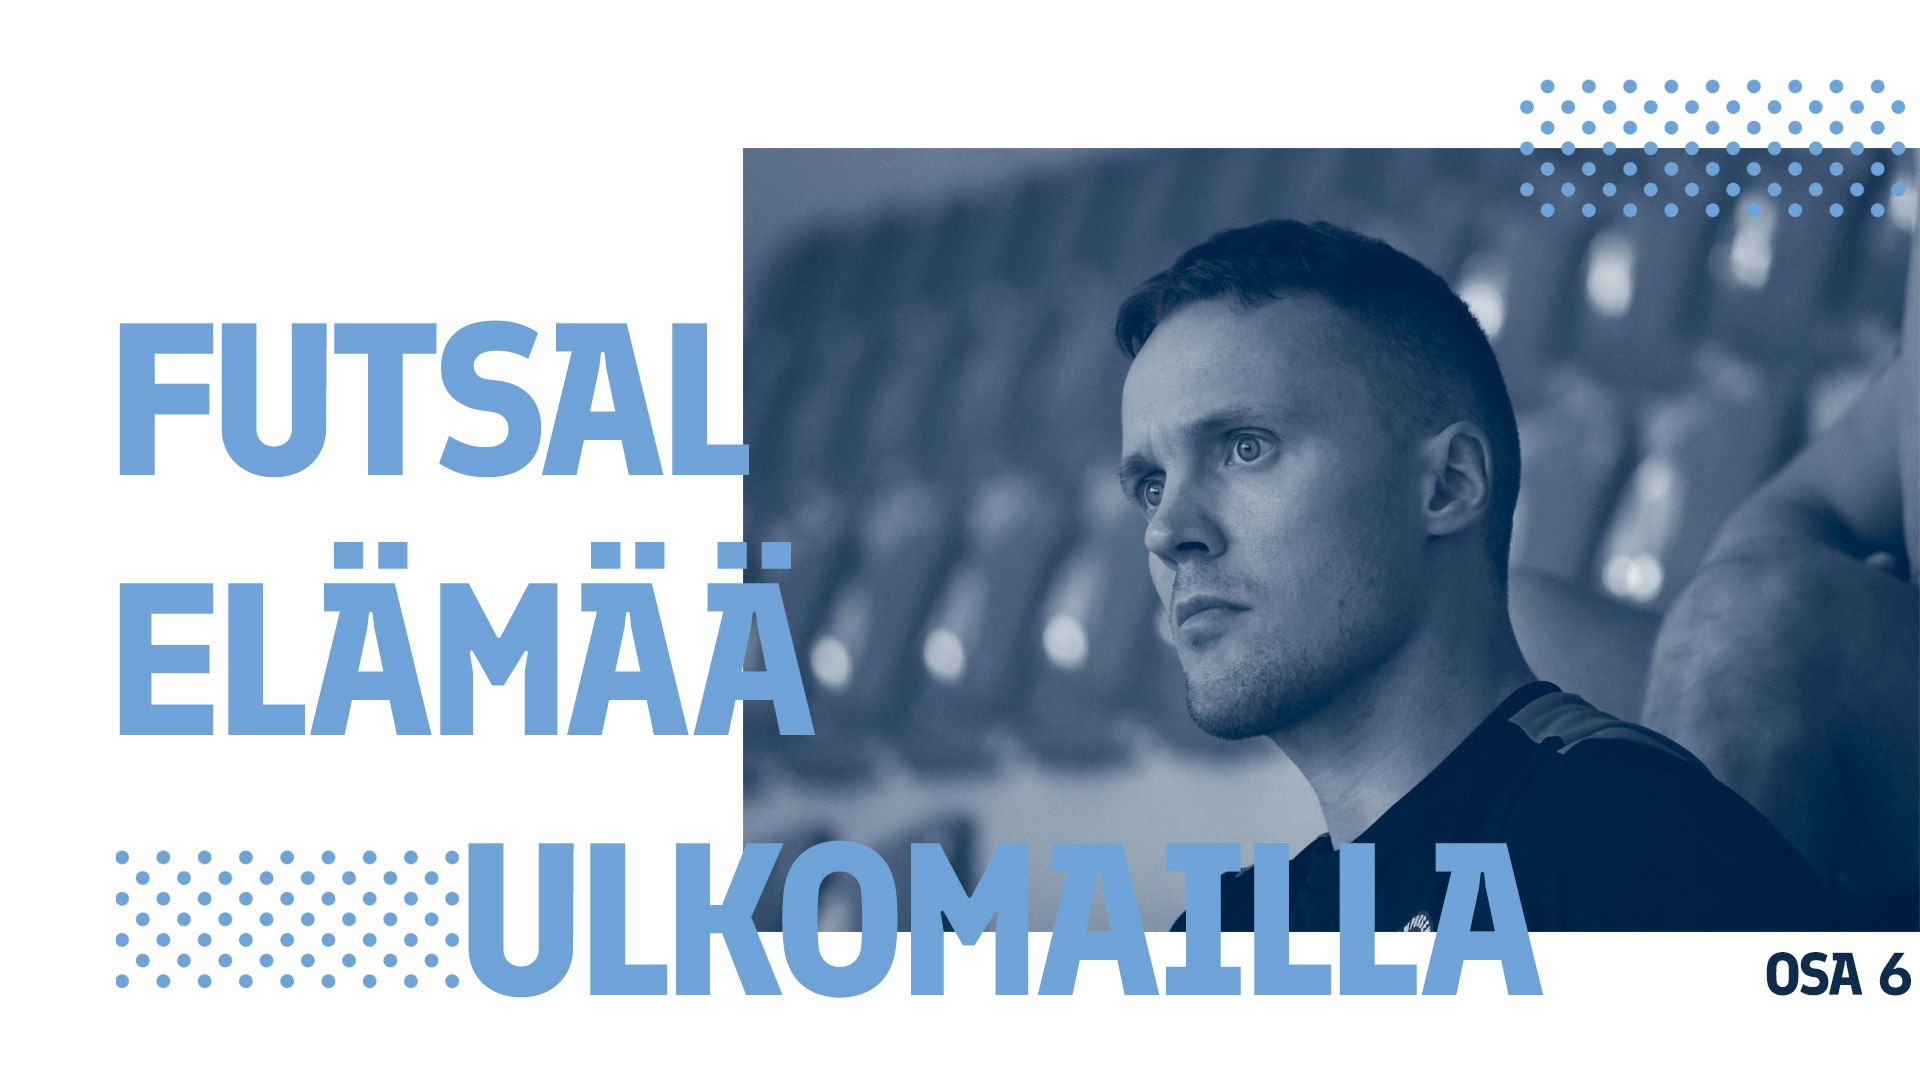 Jukka Kytölän blogisarja kertoo suomalaisen futsalpelaajan vuodesta ulkomailla